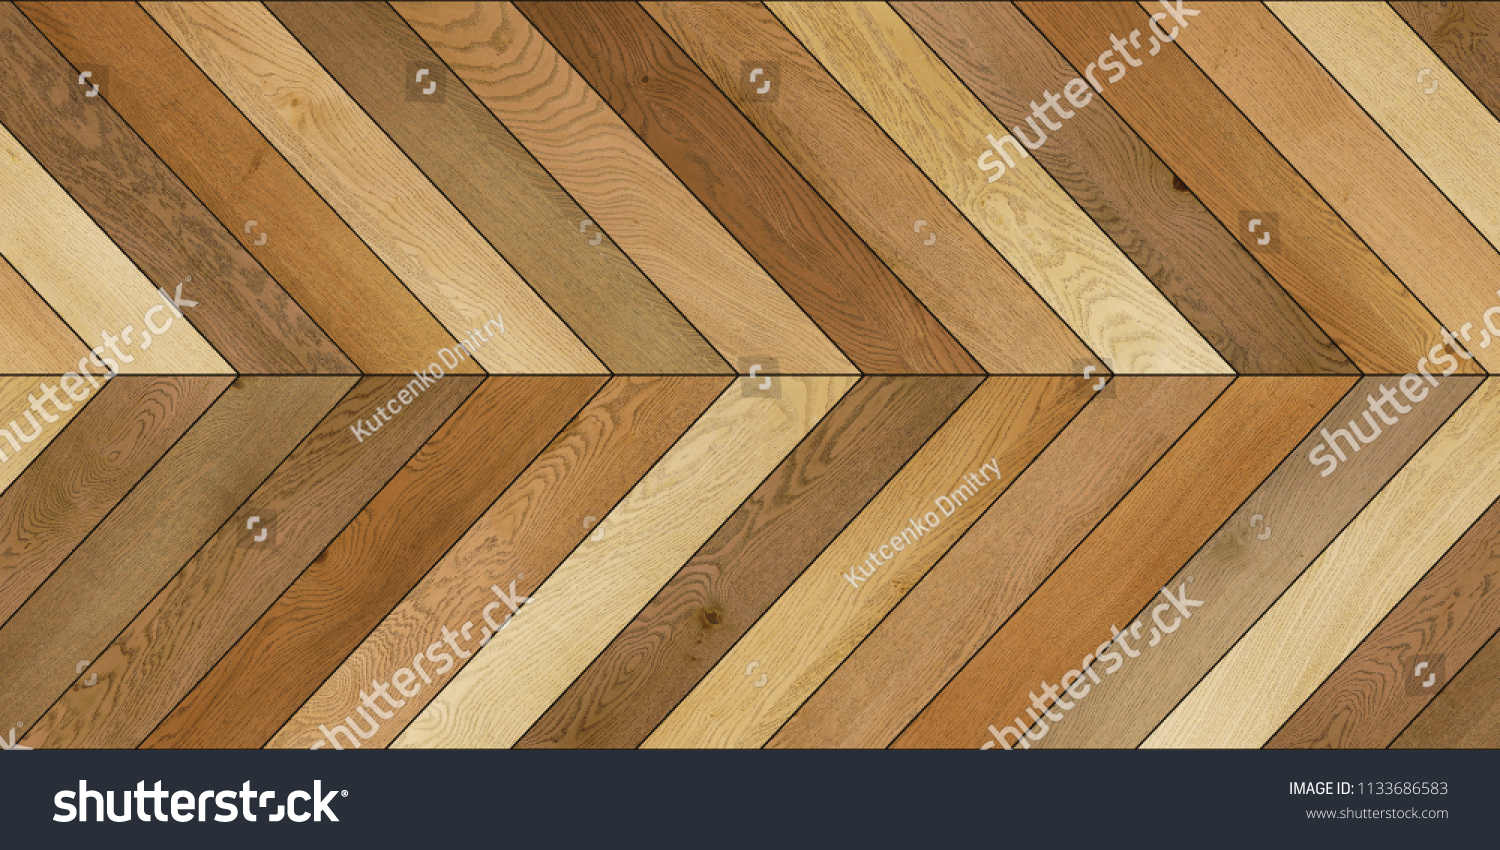 Seamless wood parquet texture (horizontal chevron brown) #1133686583